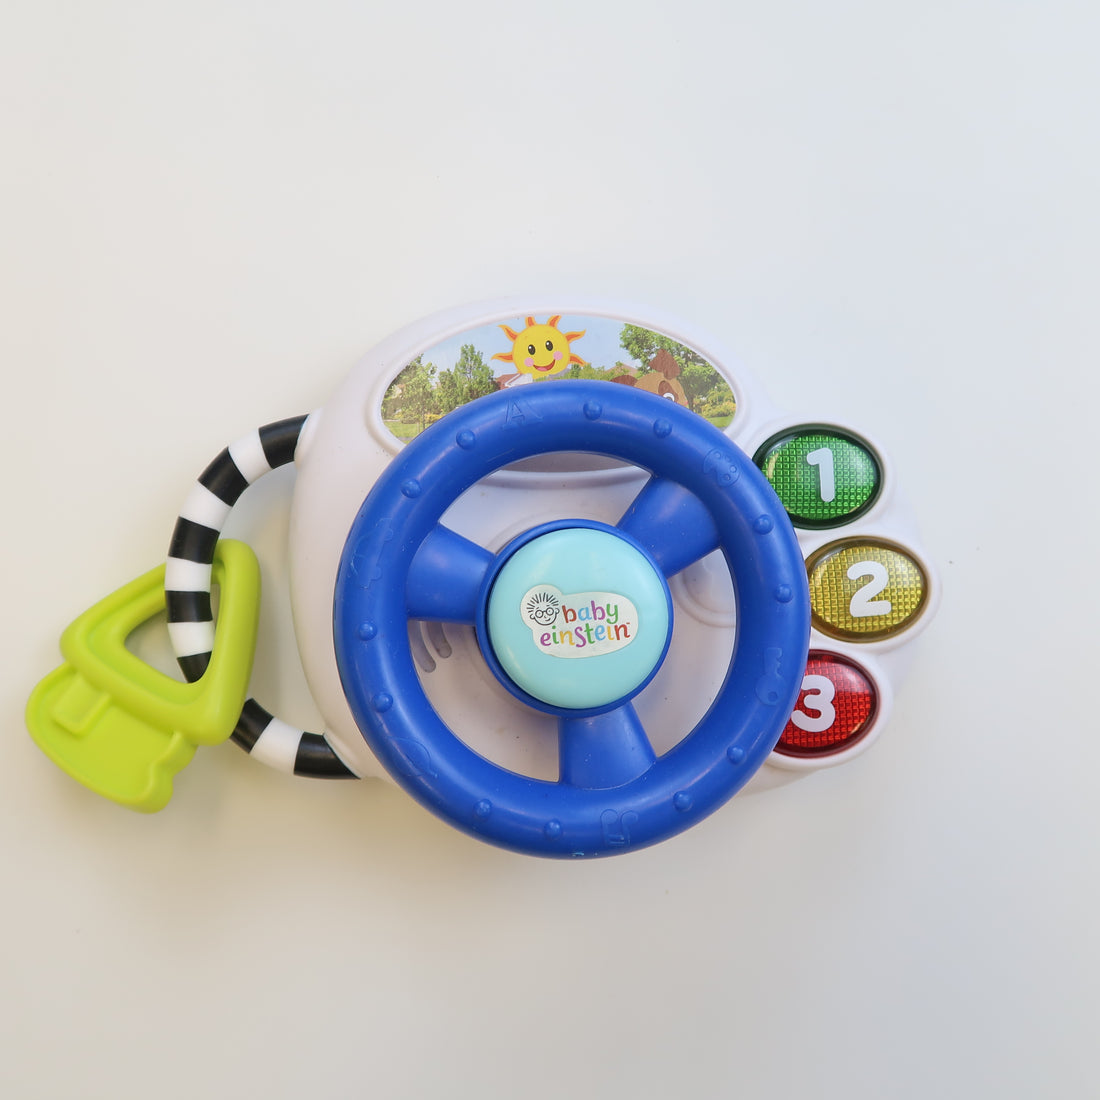 Baby Einstein - Steering Wheel Toy